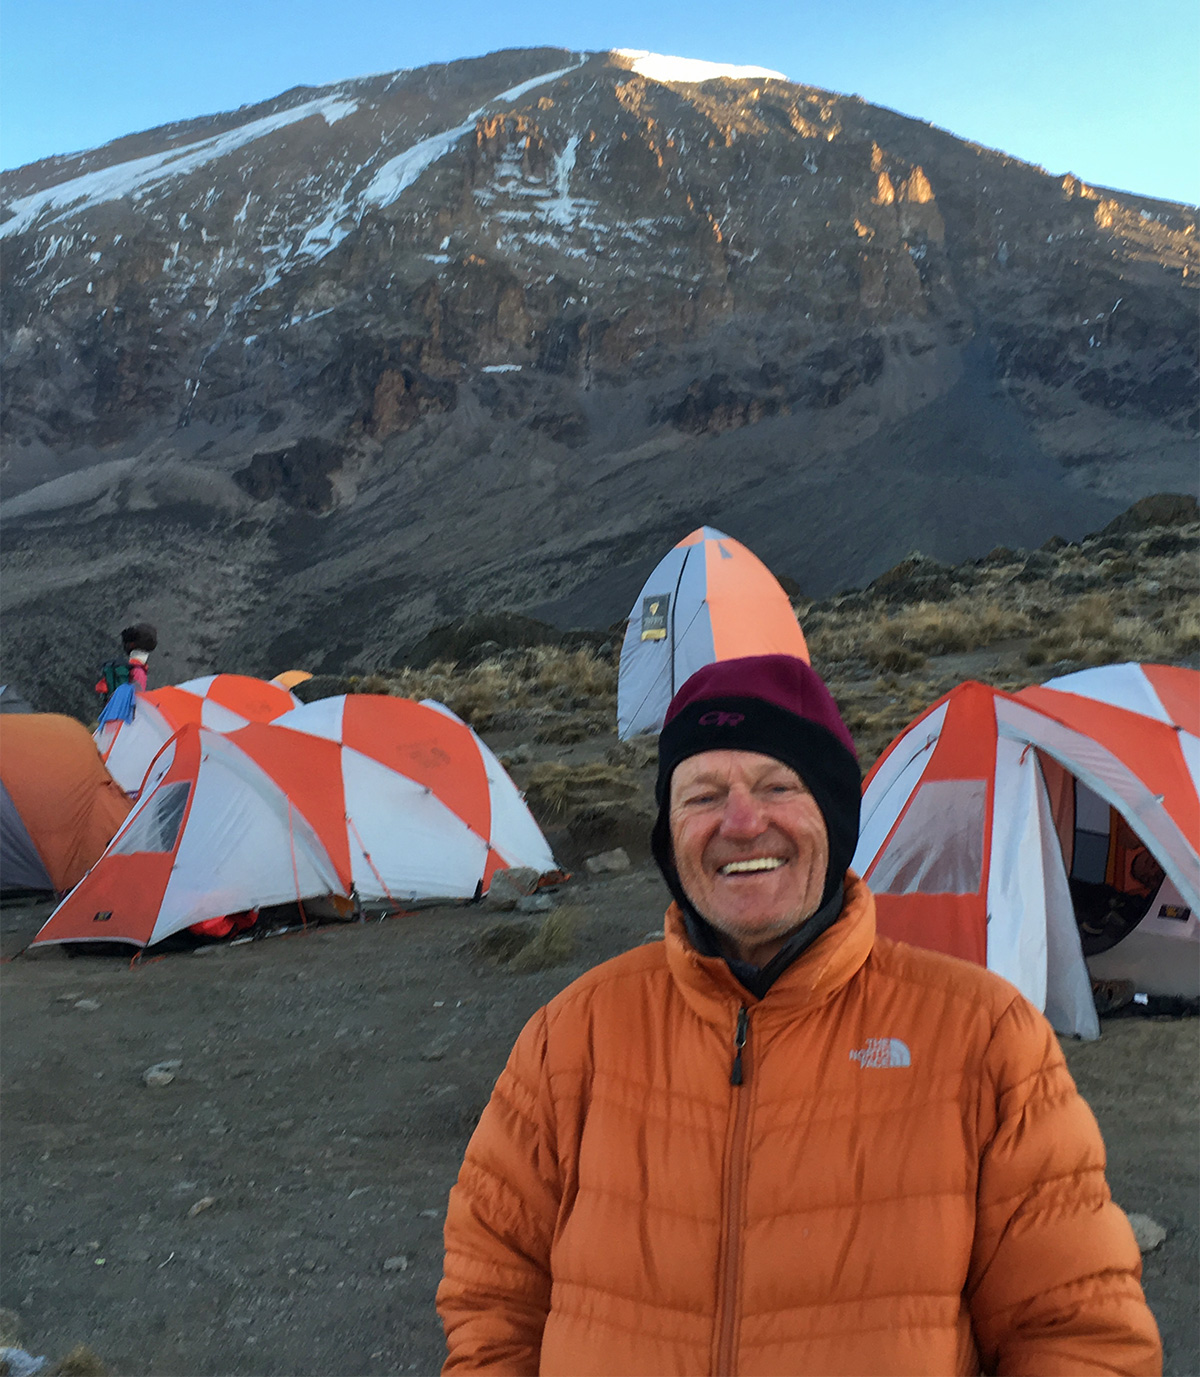 80 year old John at camp on Mount Kilimanjaro